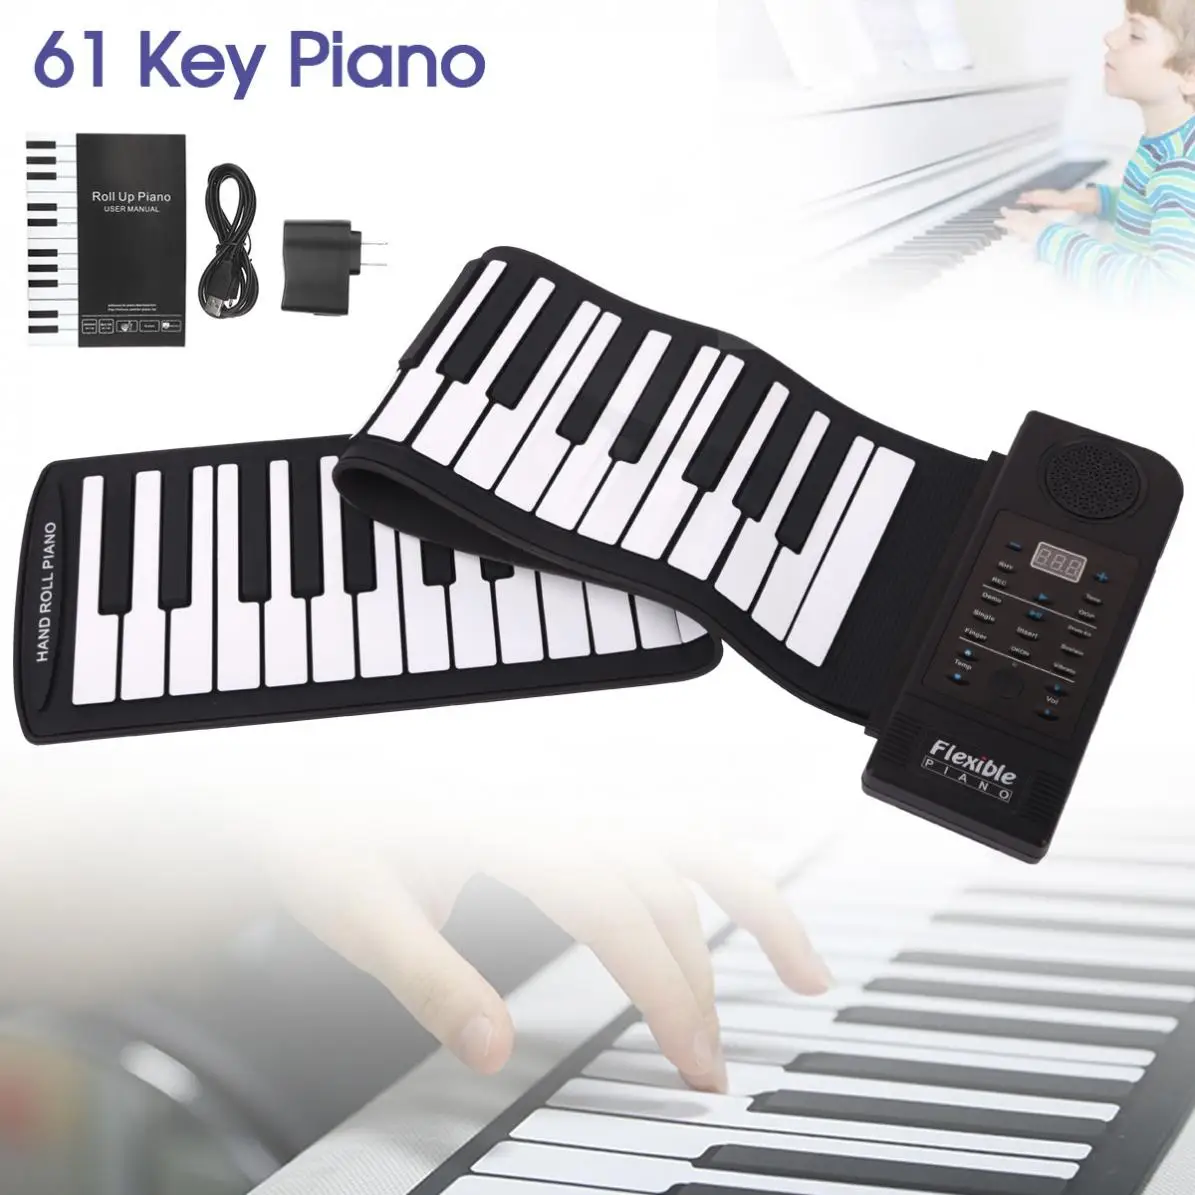 Портативный 61 Ключ 128 тонов скручивающееся гибкое Силиконовое пианино USB Электронная MIDI клавиатура орган